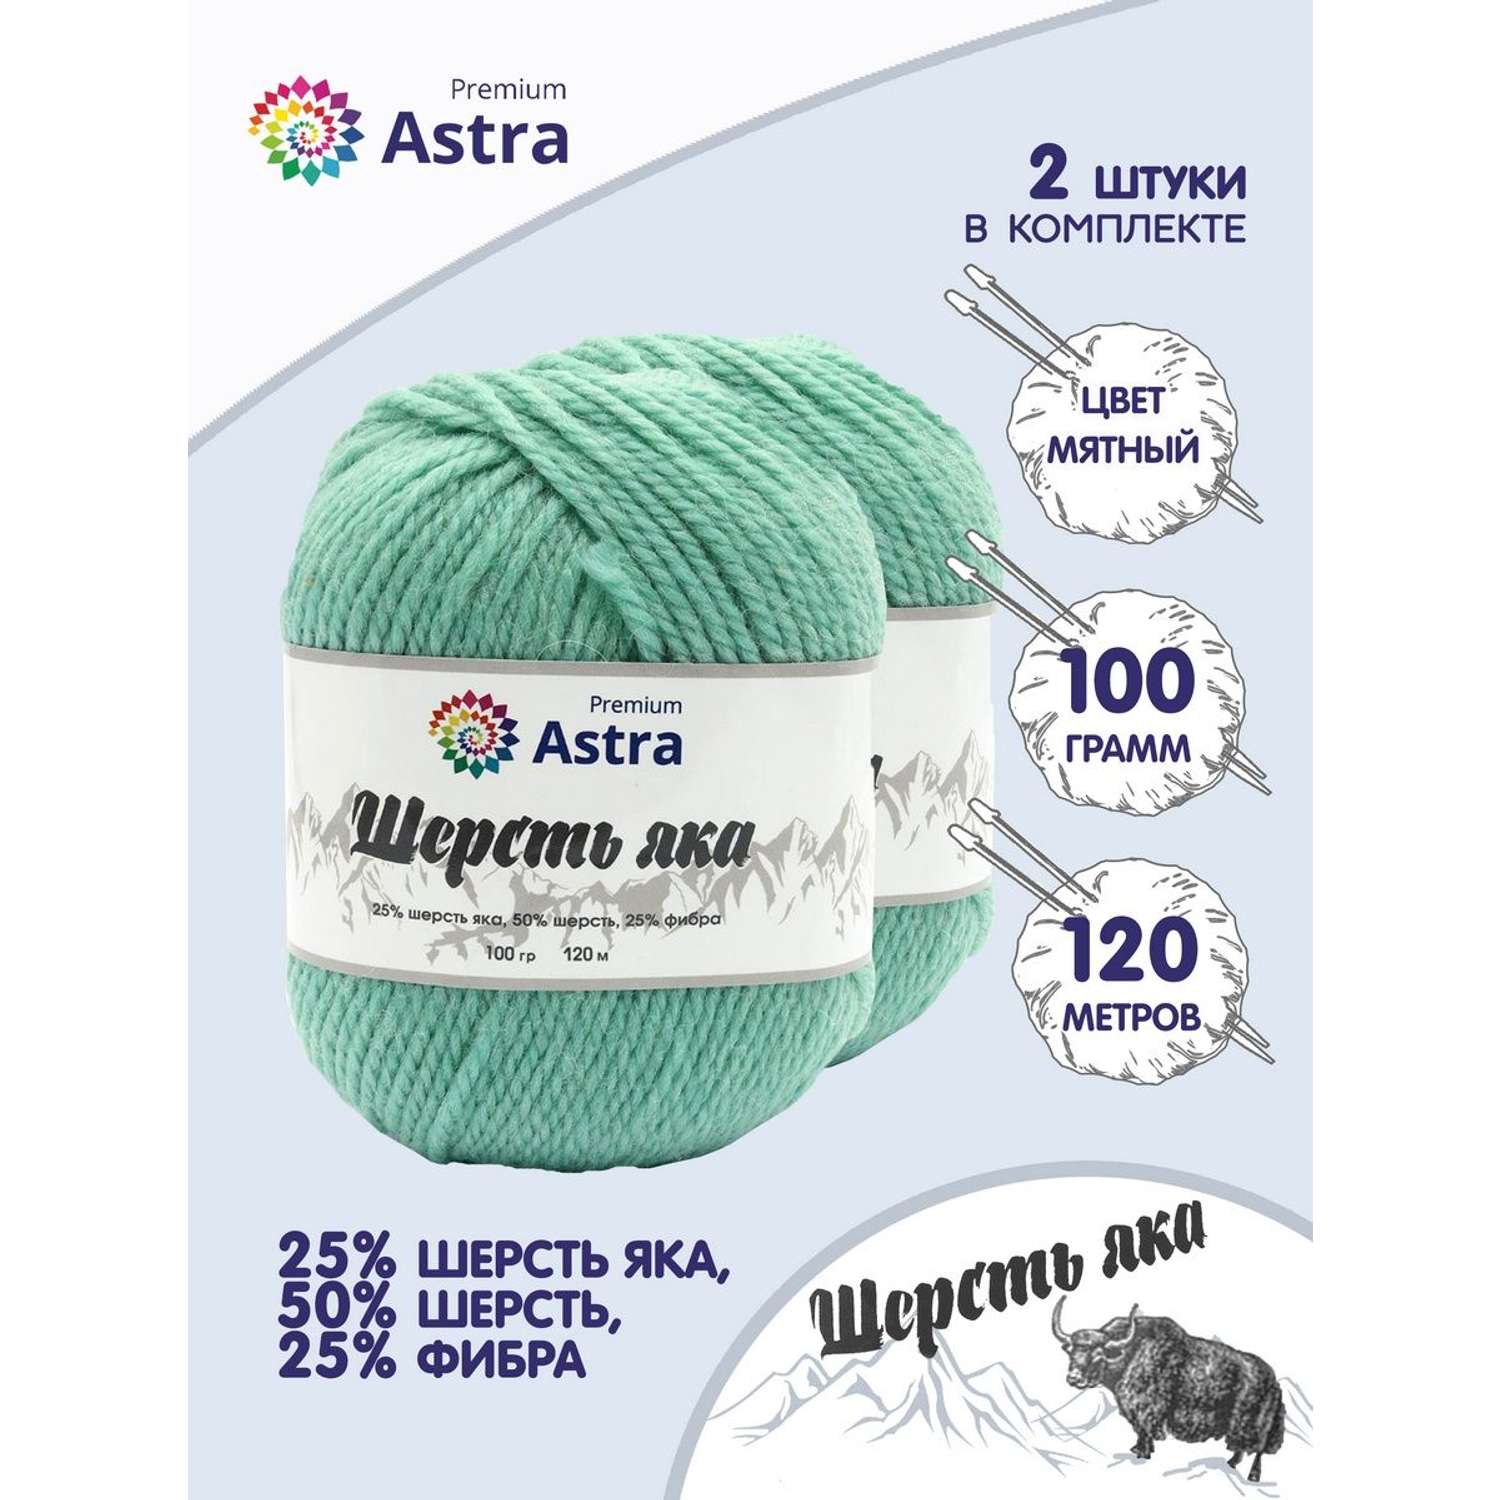 Пряжа Astra Premium Шерсть яка Yak wool теплая мягкая 100 г 120 м 02 мятный 2 мотка - фото 1